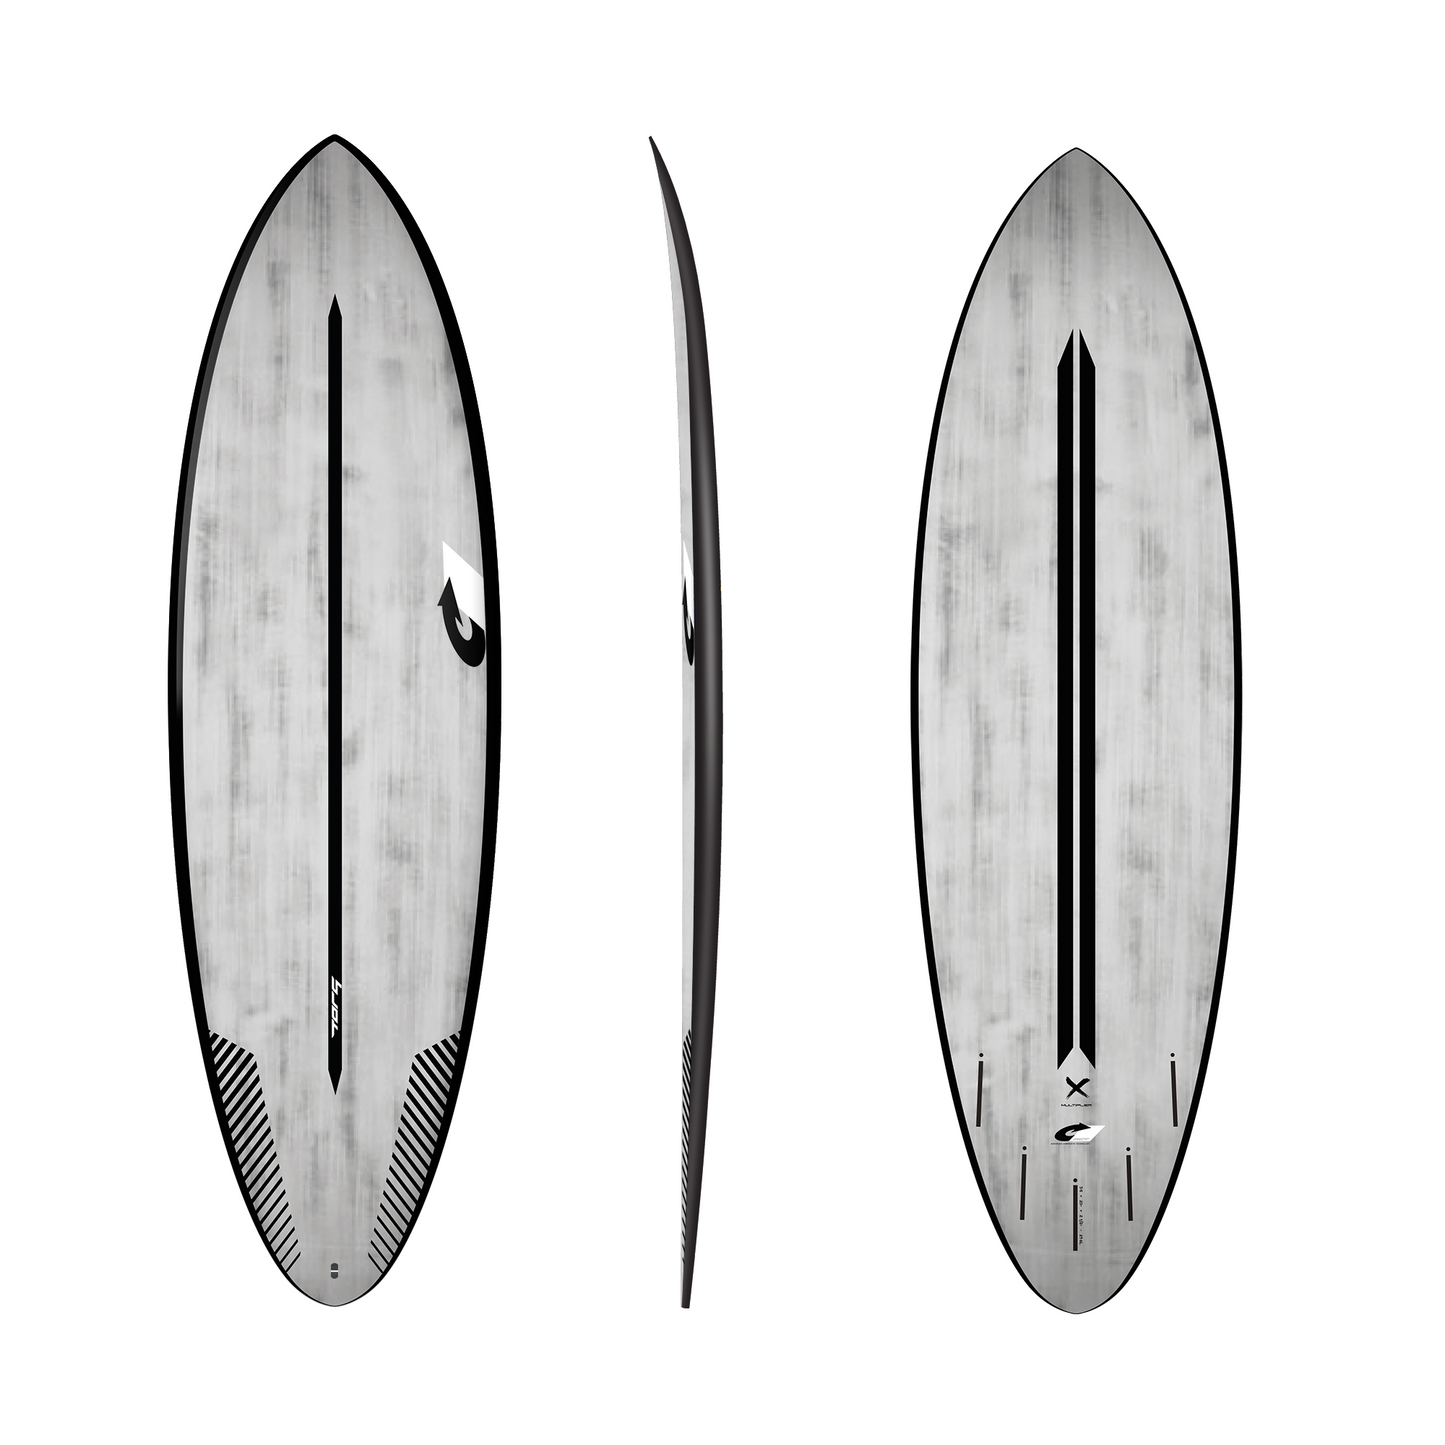 Torq ACT Multiplier 6’4 x 20 7/8” x 2 3/4 38.8L Surfboard